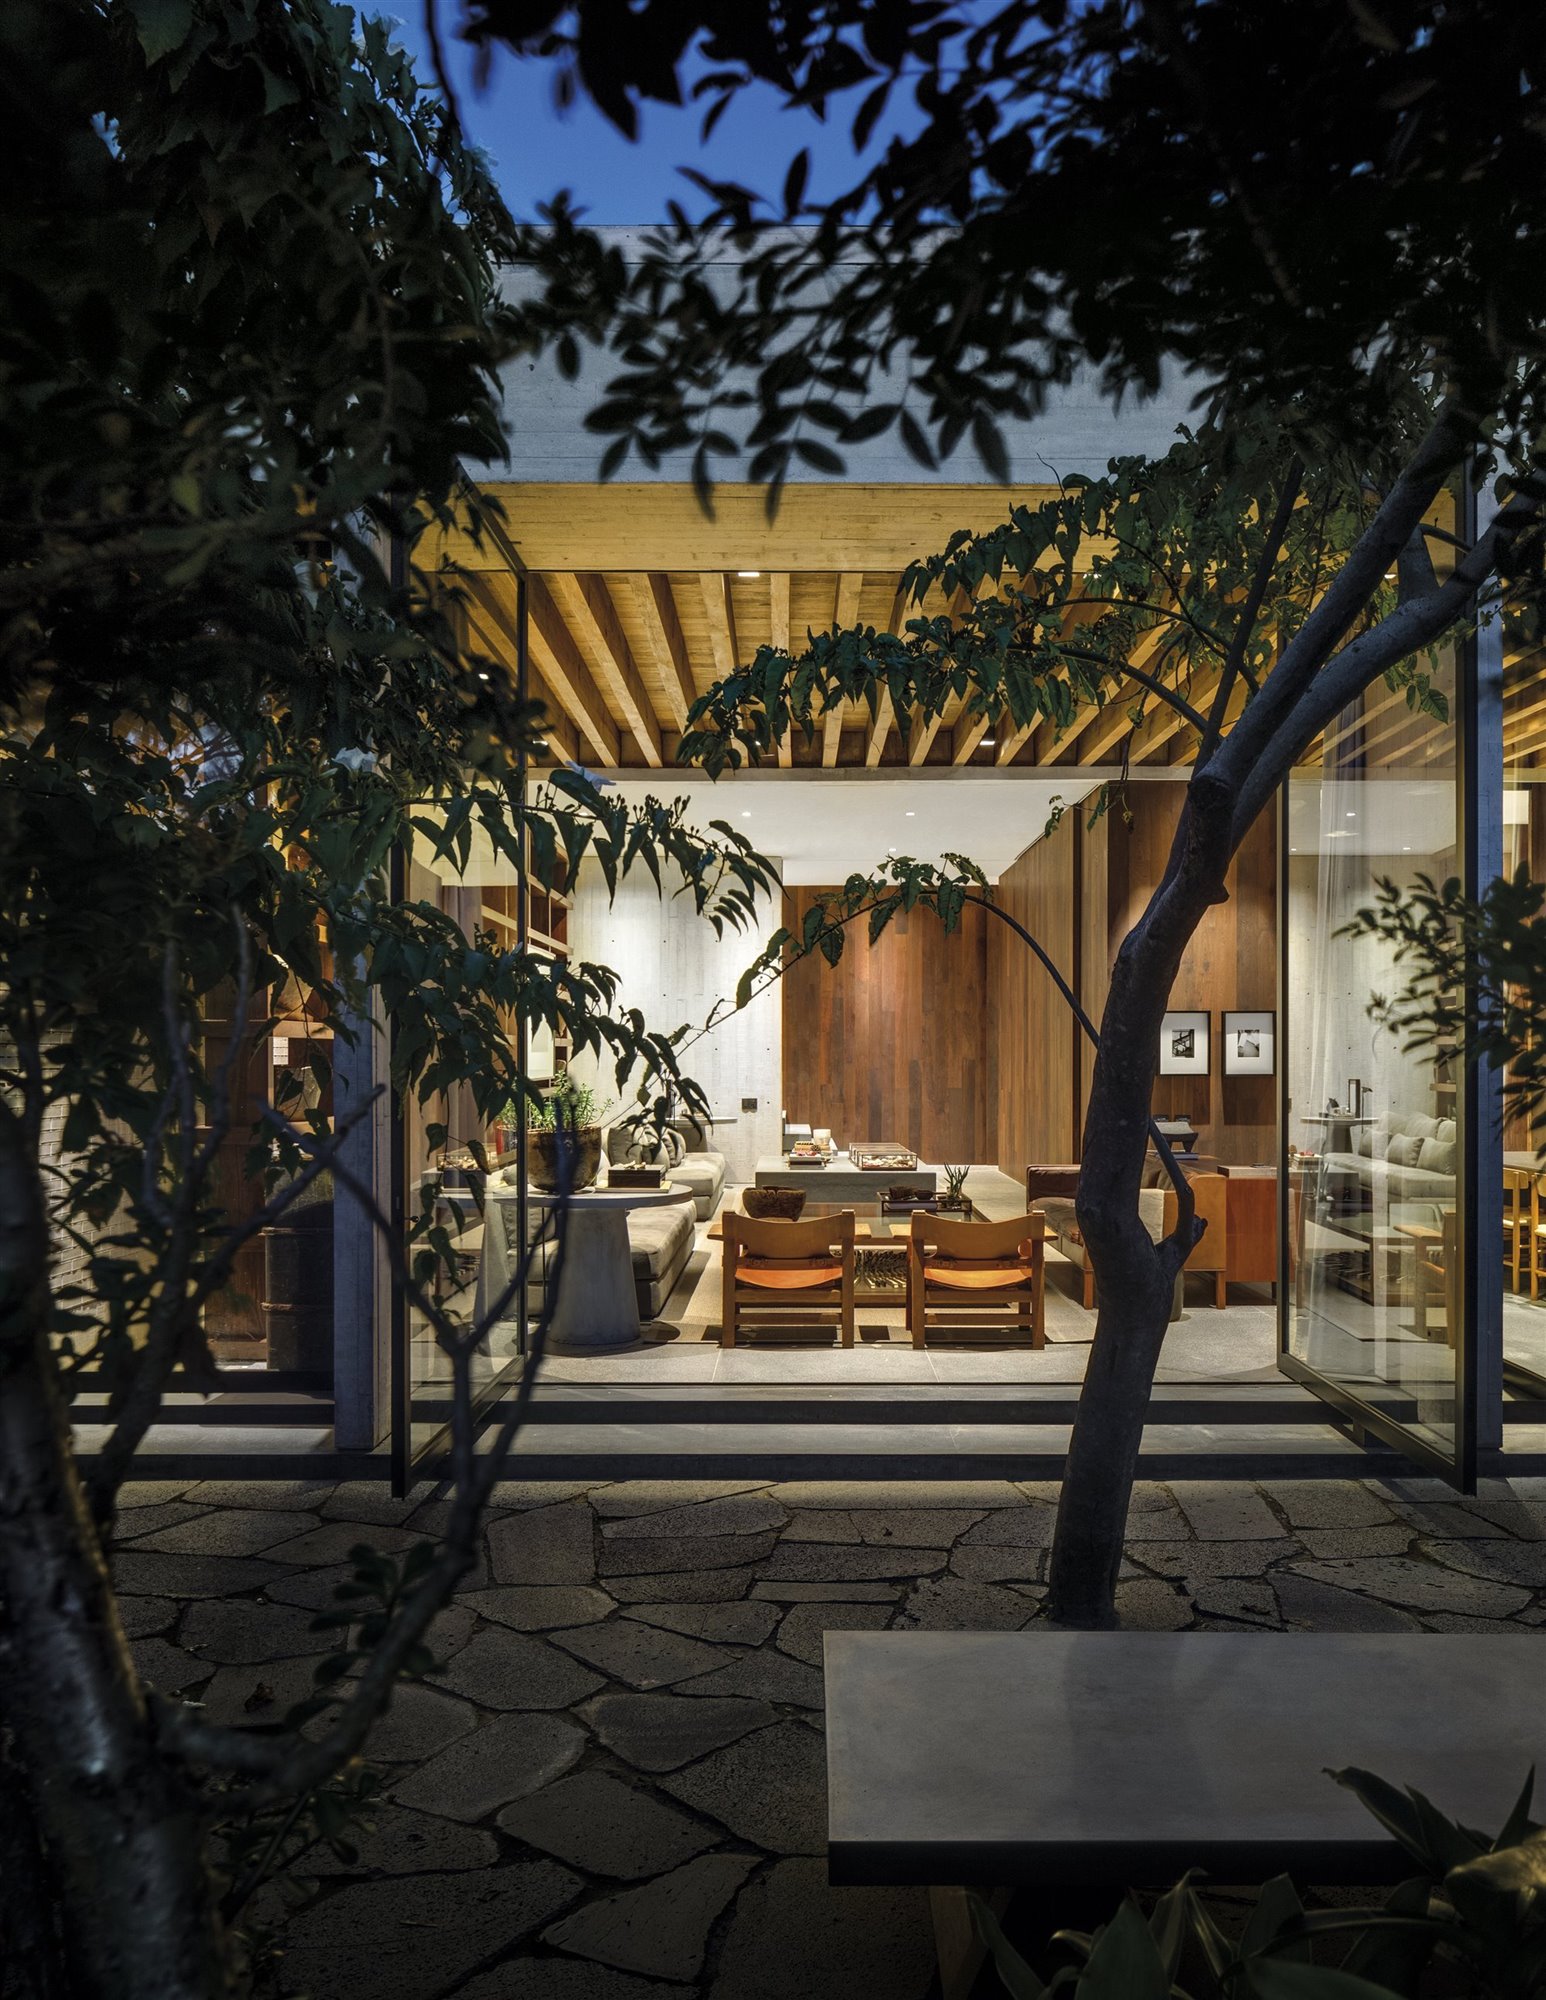 Casa moderna con interiores de madera en Mexico salon visto desde el jardin